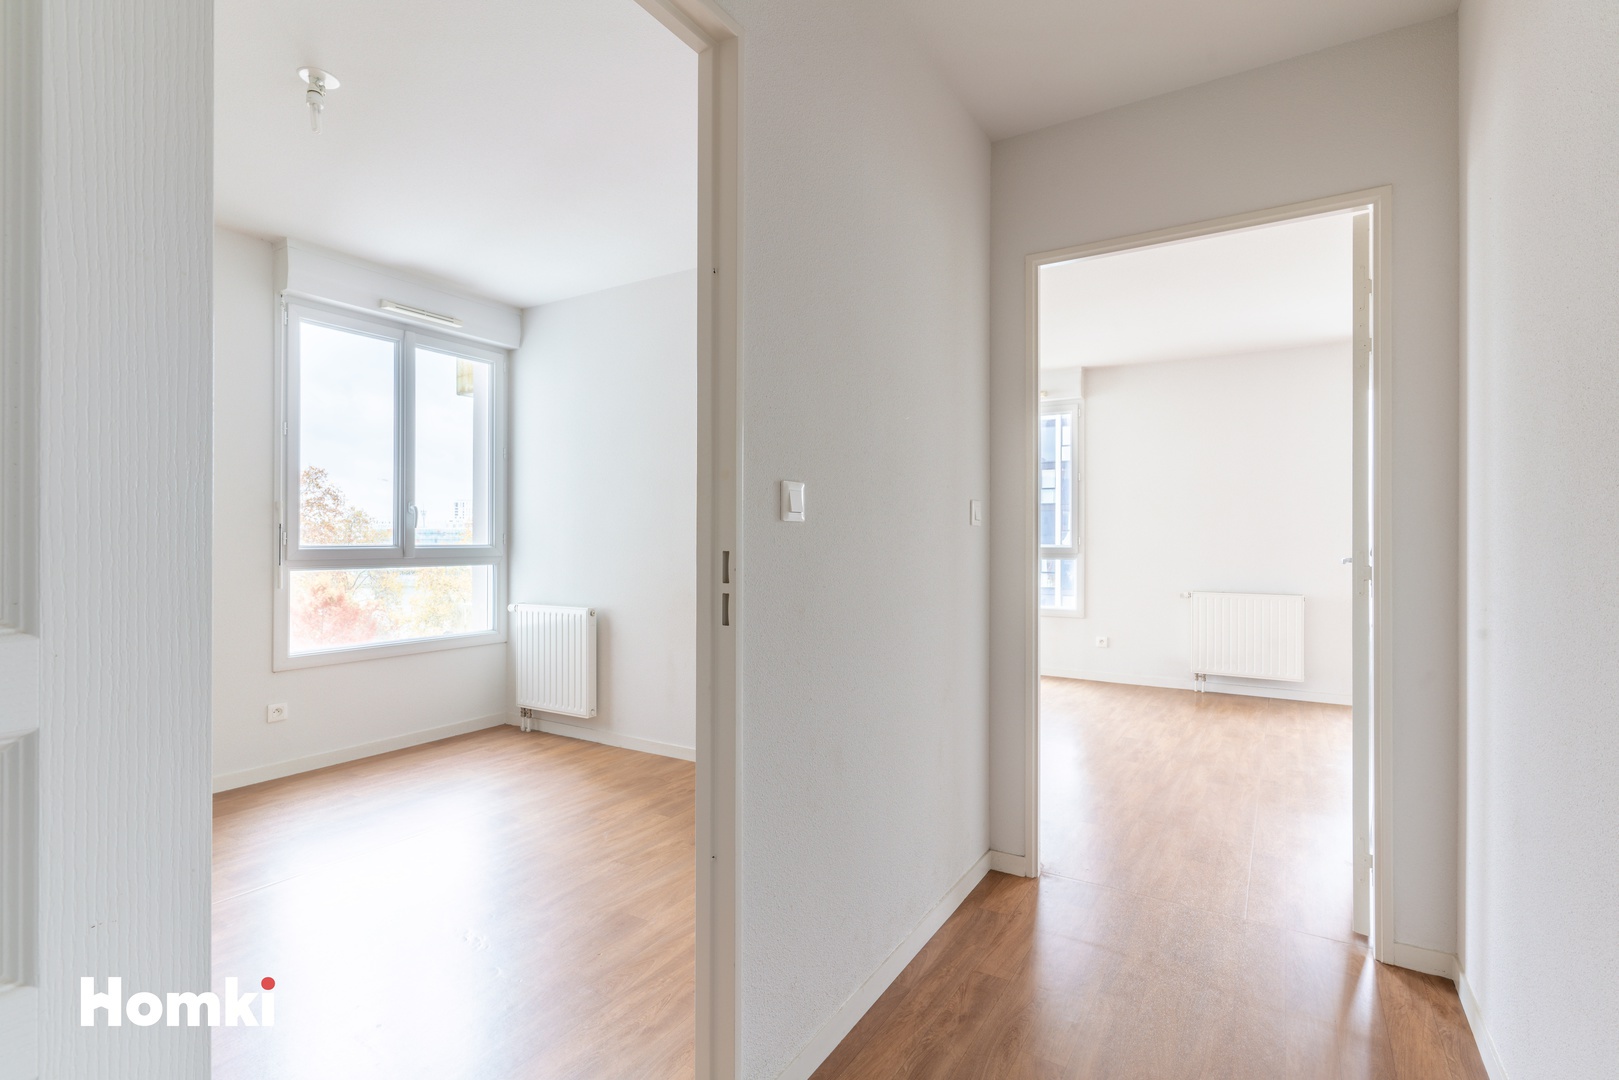 Homki - Vente Appartement  de 42.8 m² à Nantes 44200